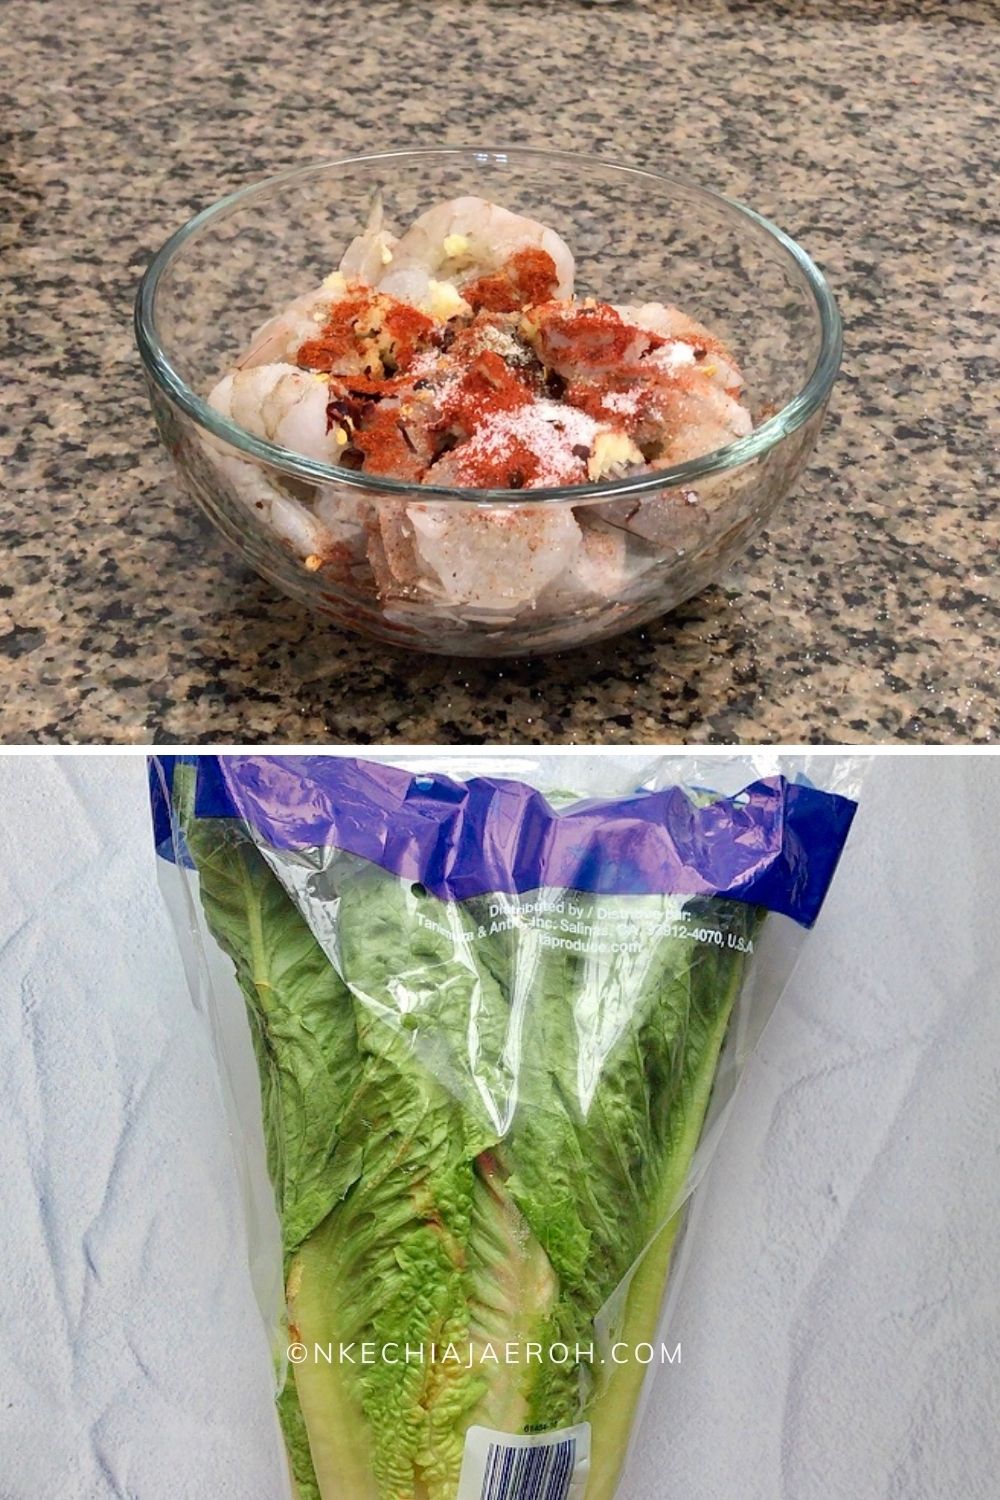 Raw shrimp and fresh lettuce leaves 